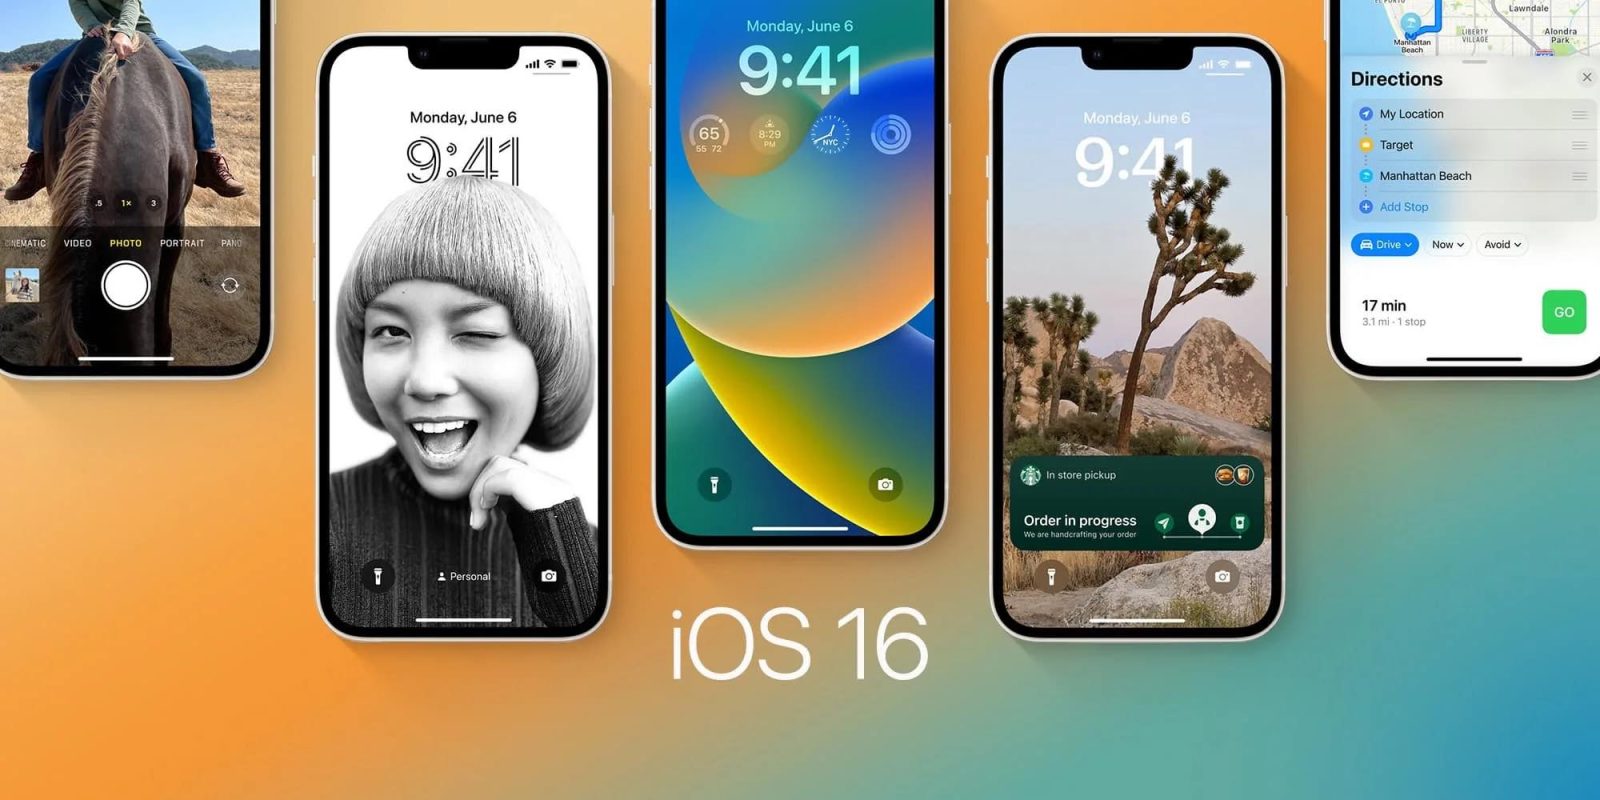 iOS 16 beta 4 changes